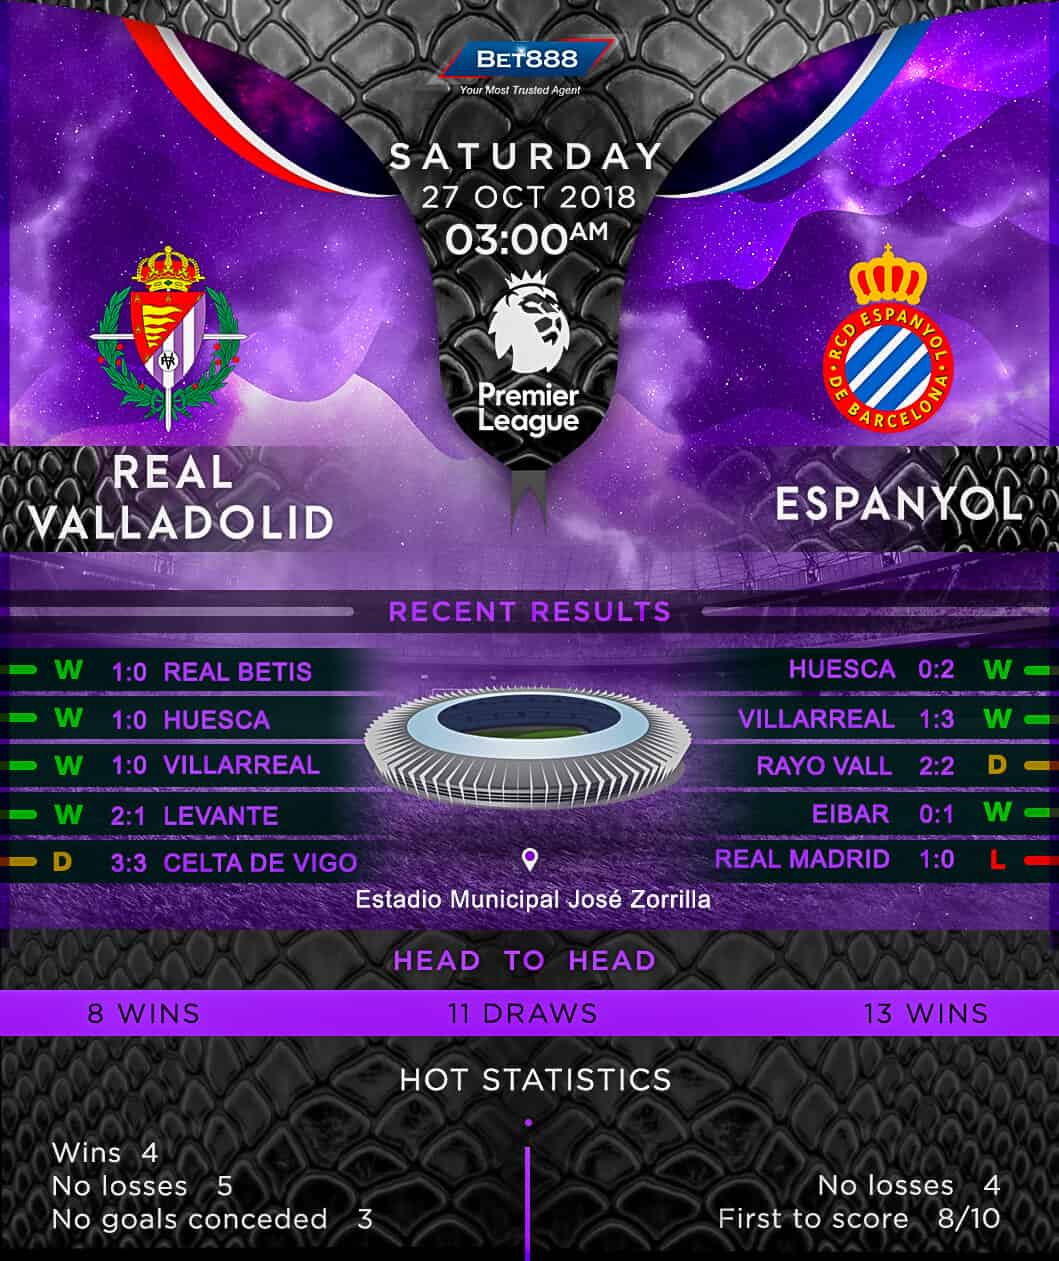 Real Valladolid vs Espanyol 27/10/18